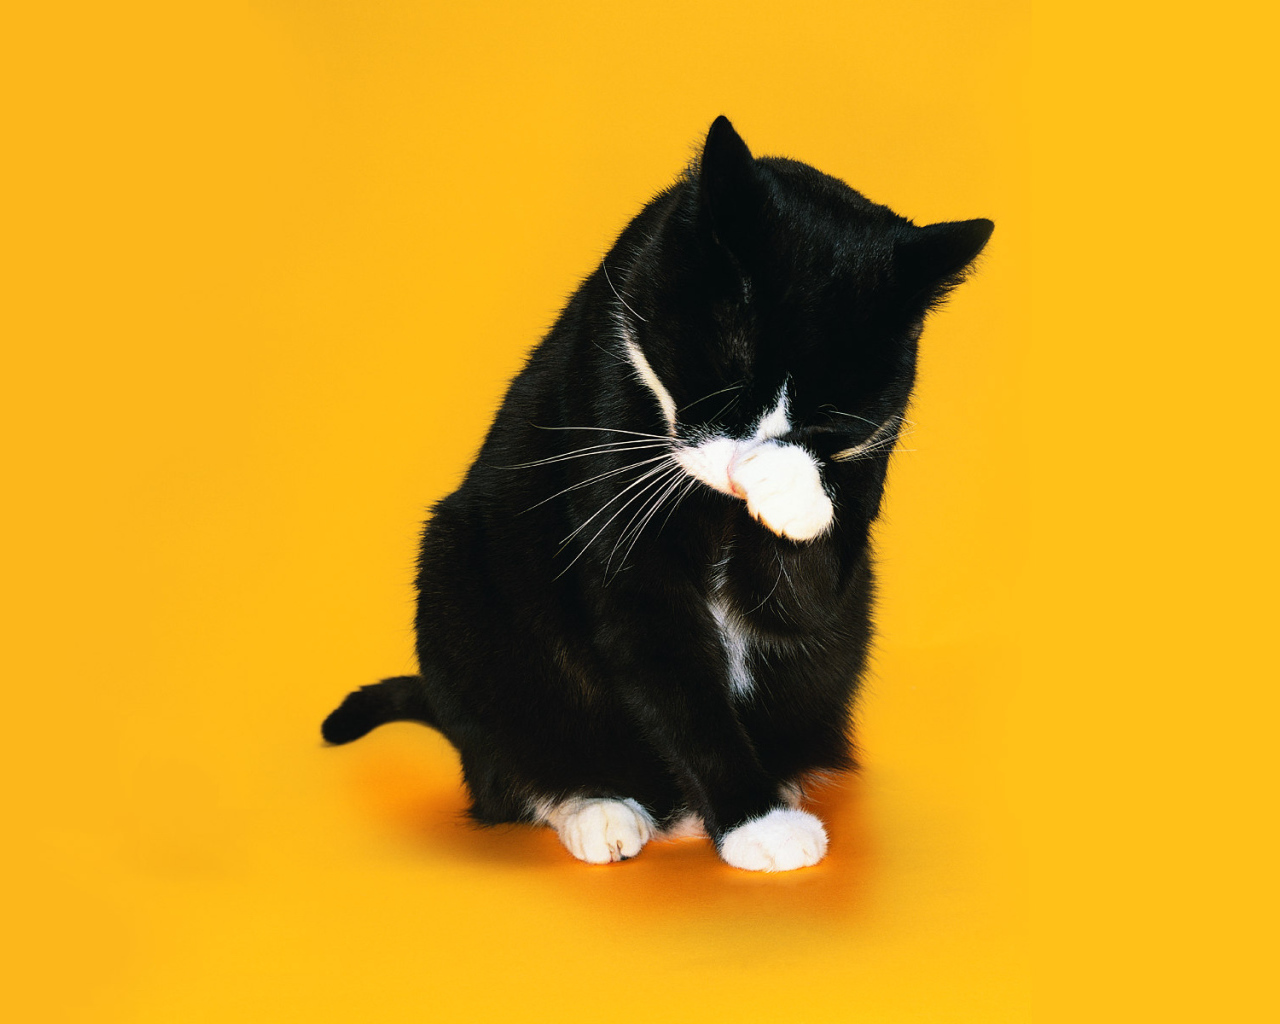 Черно белый кот умывается на желтом фоне